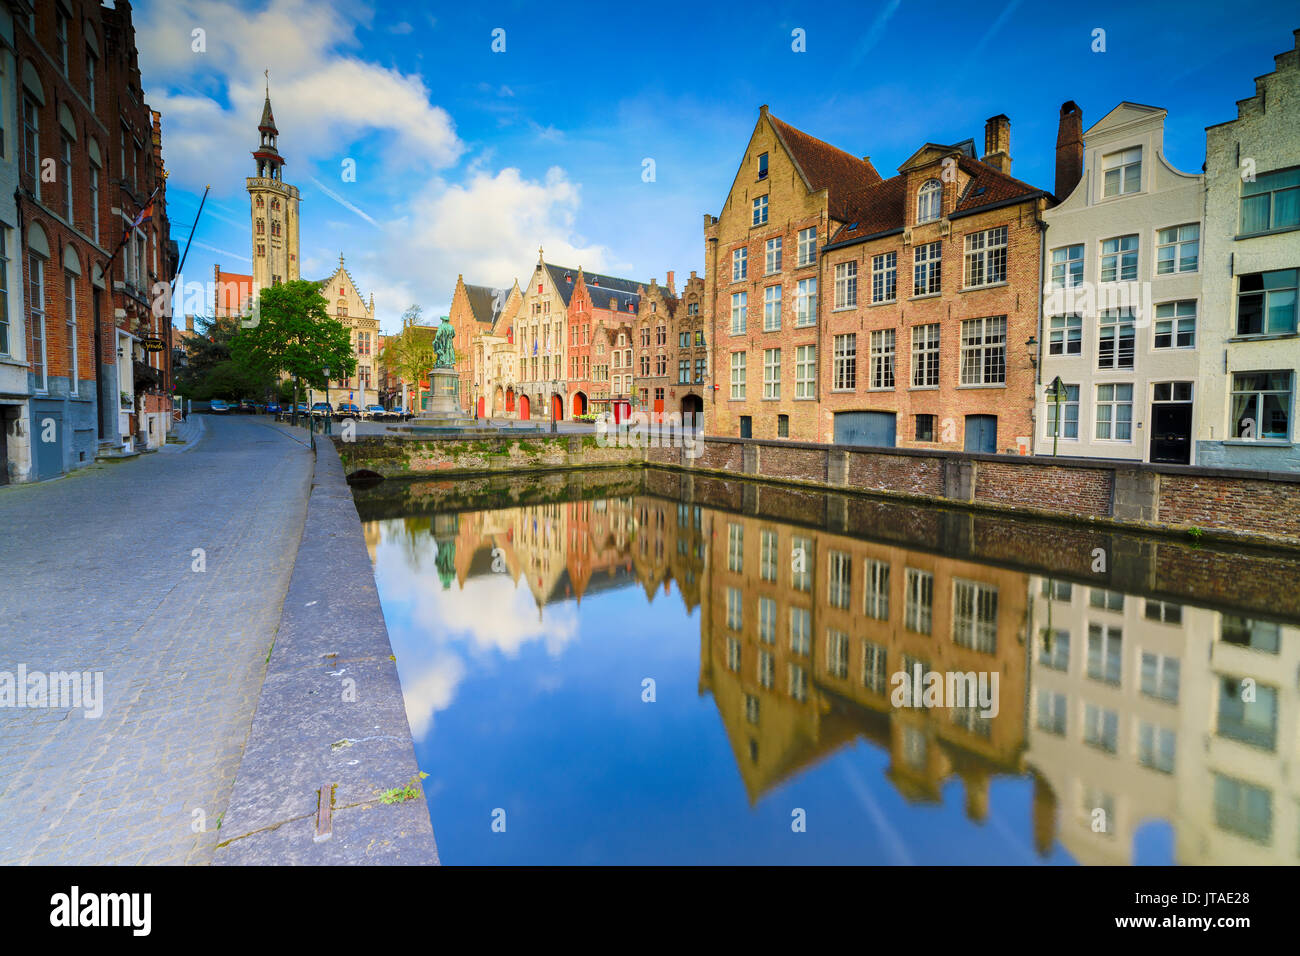 Ciel clair à l'aube sur les bâtiments historiques et maisons de centre-ville compte dans le canal, Bruges, Flandre occidentale, Belgique, Europe Banque D'Images